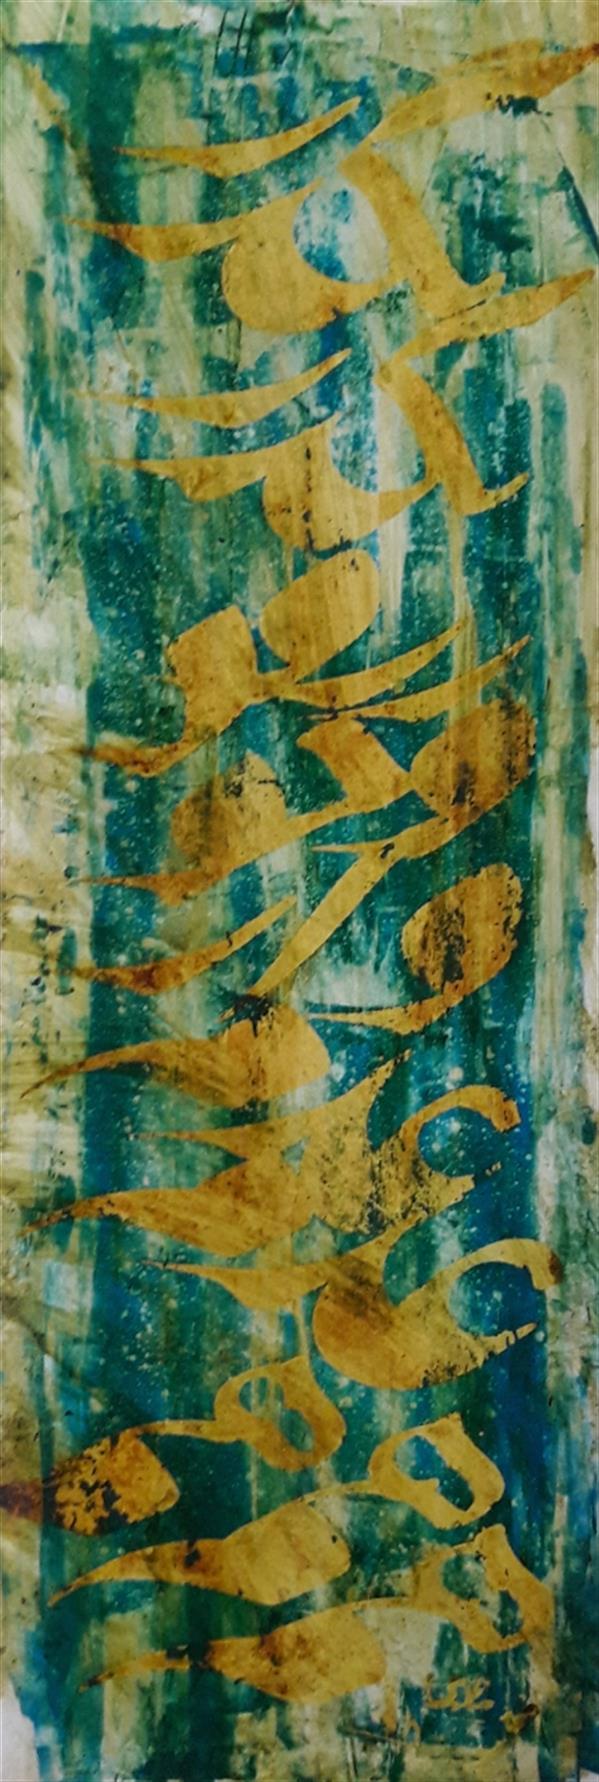 هنر خوشنویسی محفل خوشنویسی محمد مظهری (فروخته شد)
بگذر ز وجود و از عدم هم
۵۰×۱۷
مرکب و اکریلیک روی مقوا